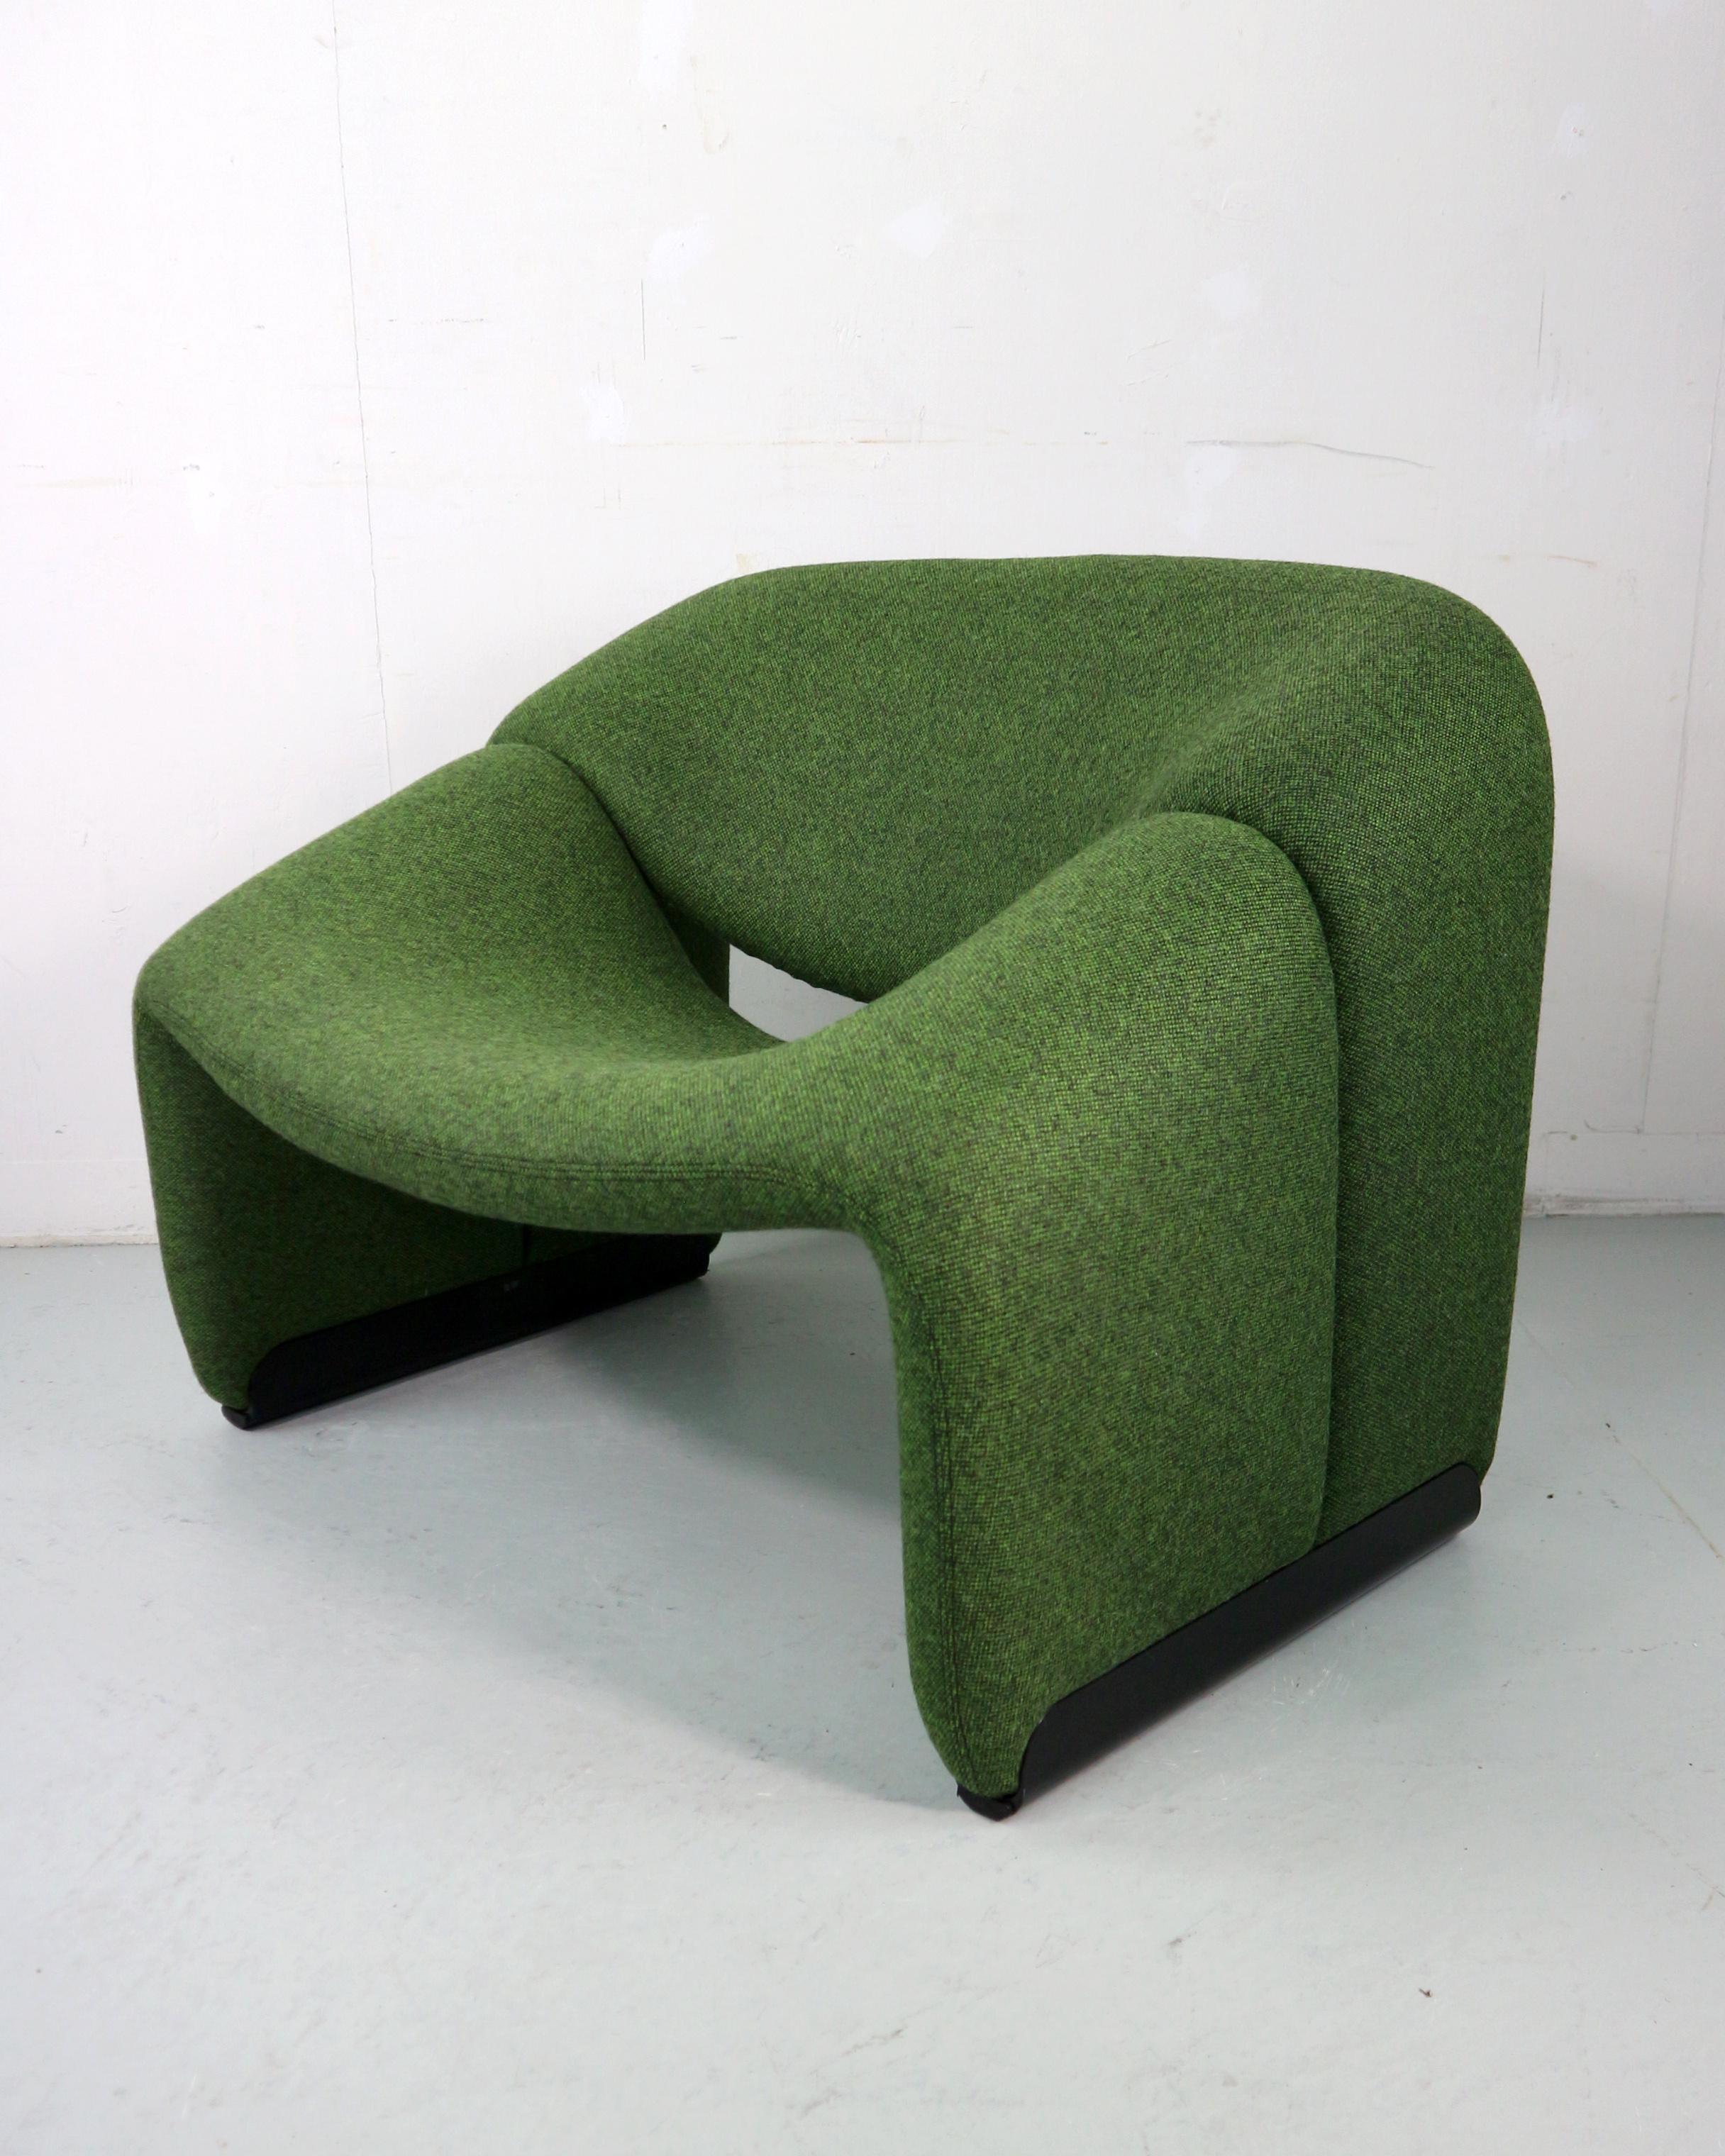 Groovy Lounge Chair, entworfen von Pierre Paulin im Jahr 1972 und hergestellt für Artifort, Holland.
Modell Nr: F598, oder auch als 